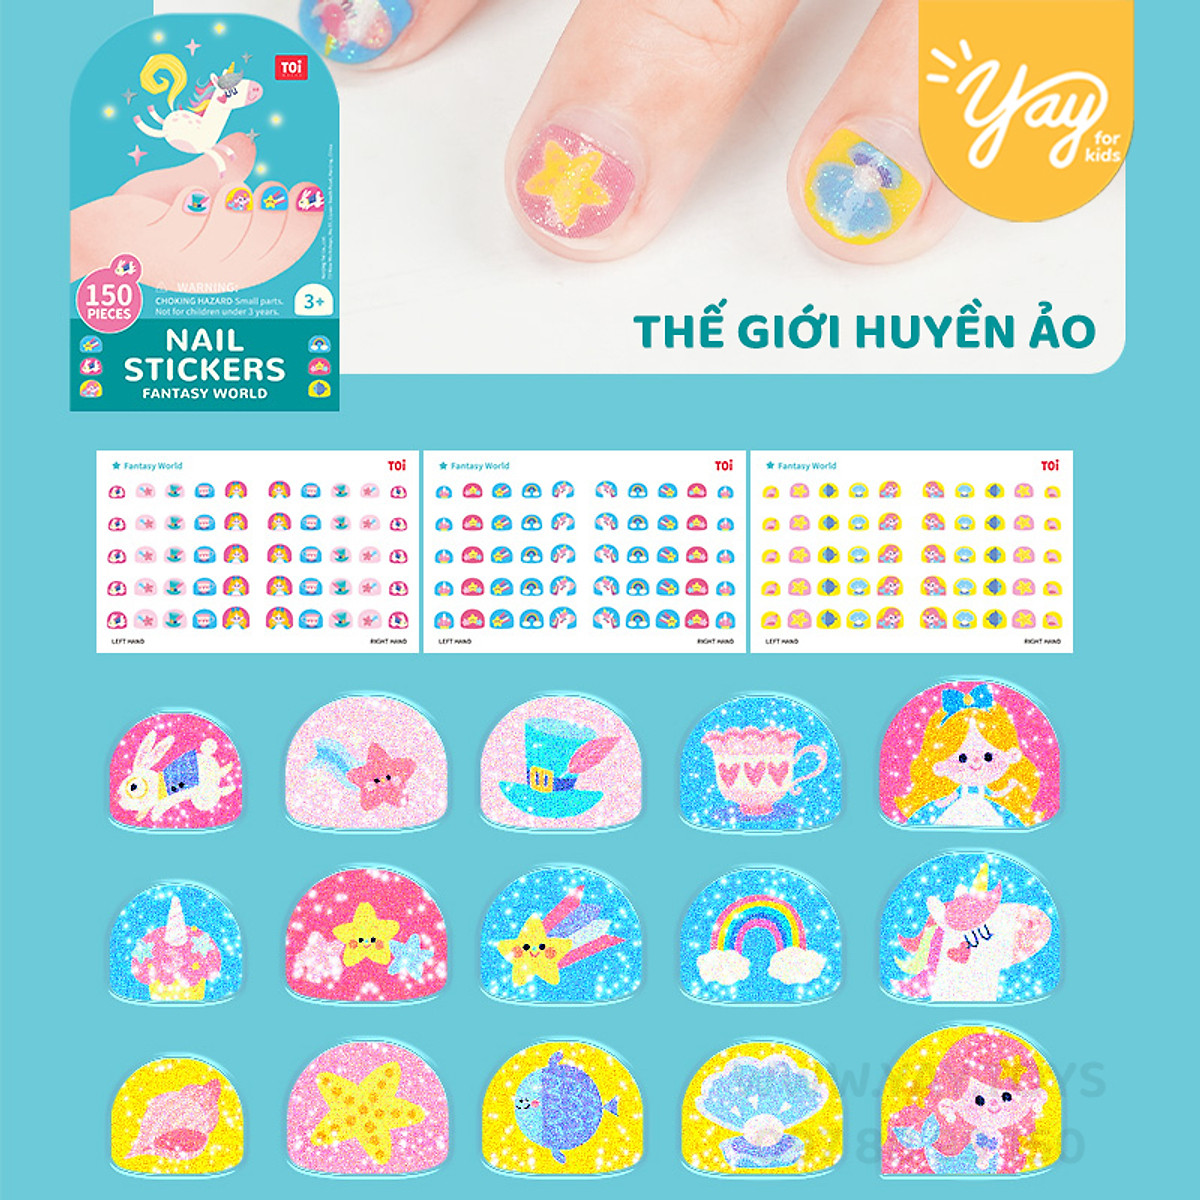 Mua Nhiều chủ đề Hình dán móng tay và hình xăm dán cho bé  Nail Sticker   Temporary Tattoo  Thế Giới Huyền Ảo tại Yay For kids